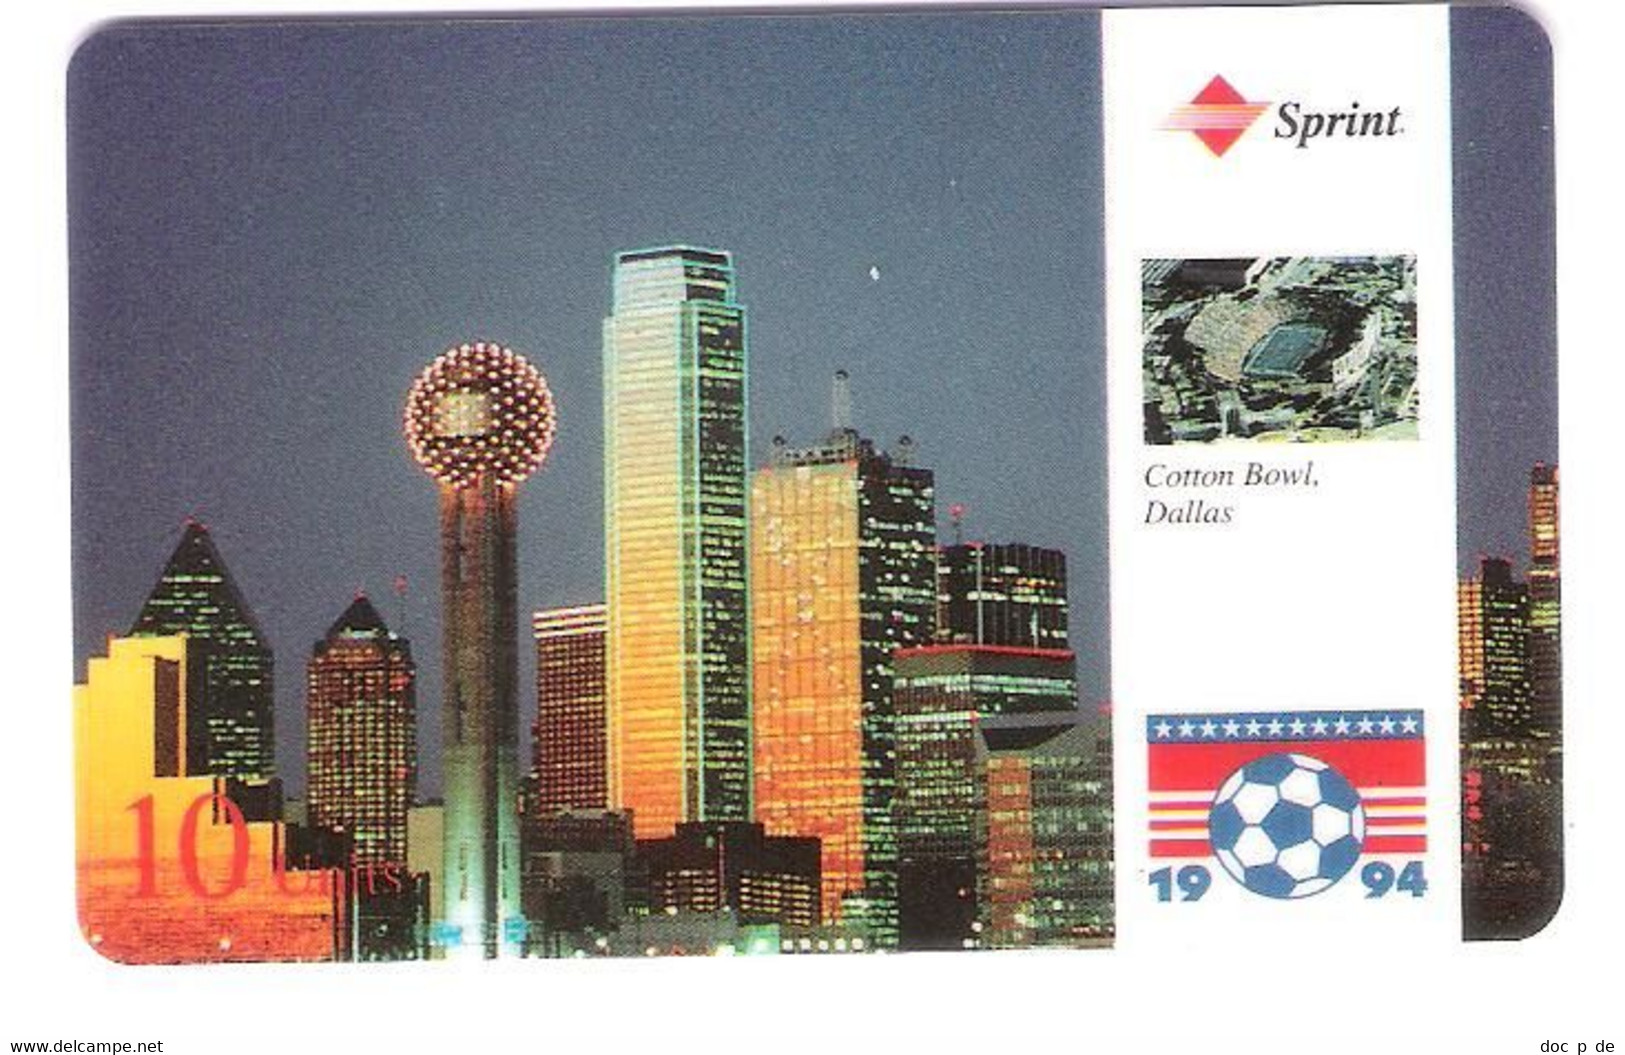 USA - Prepaid Card - Sprint - Football - Fussball - Soccer World Cup USA 94  - Cotton Bowl Dallas - Sprint